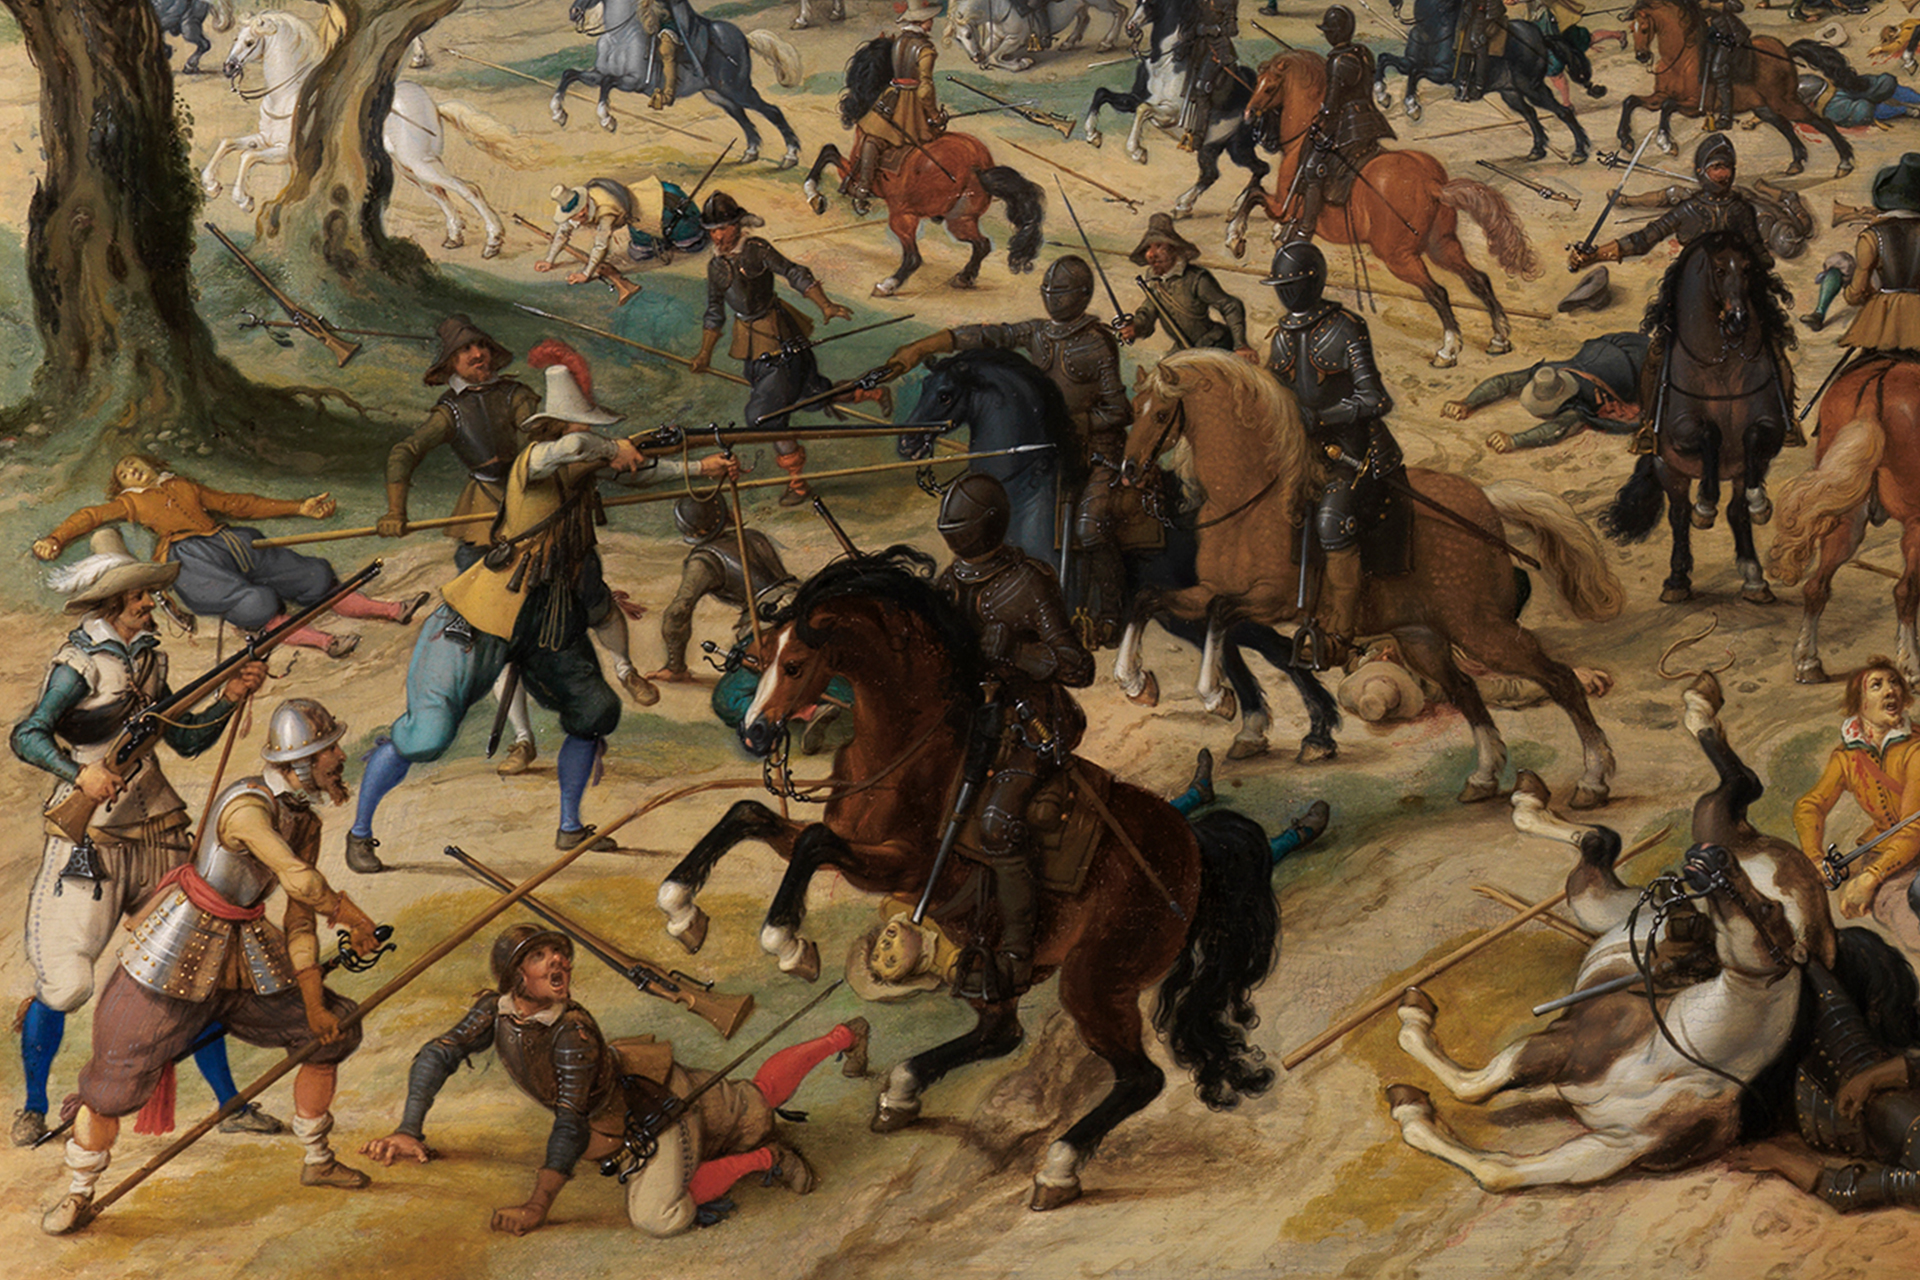 Detailansicht des Überfalls auf einen Geleitzug. Man sieht Pferde und kämpfende Männer.